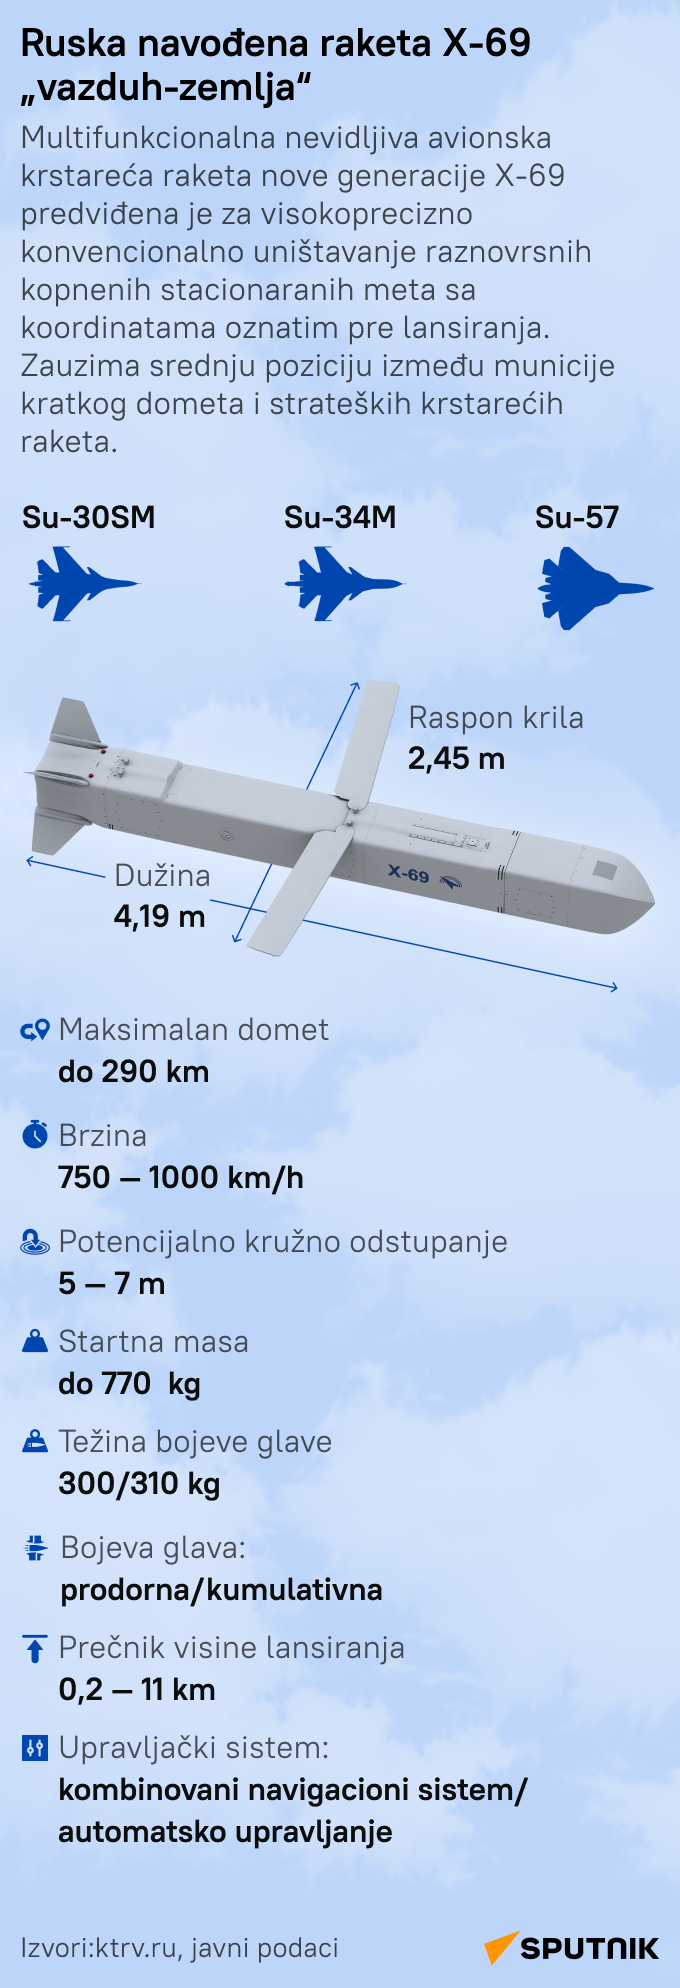 Ruska raketa H-69 - Sputnik Srbija